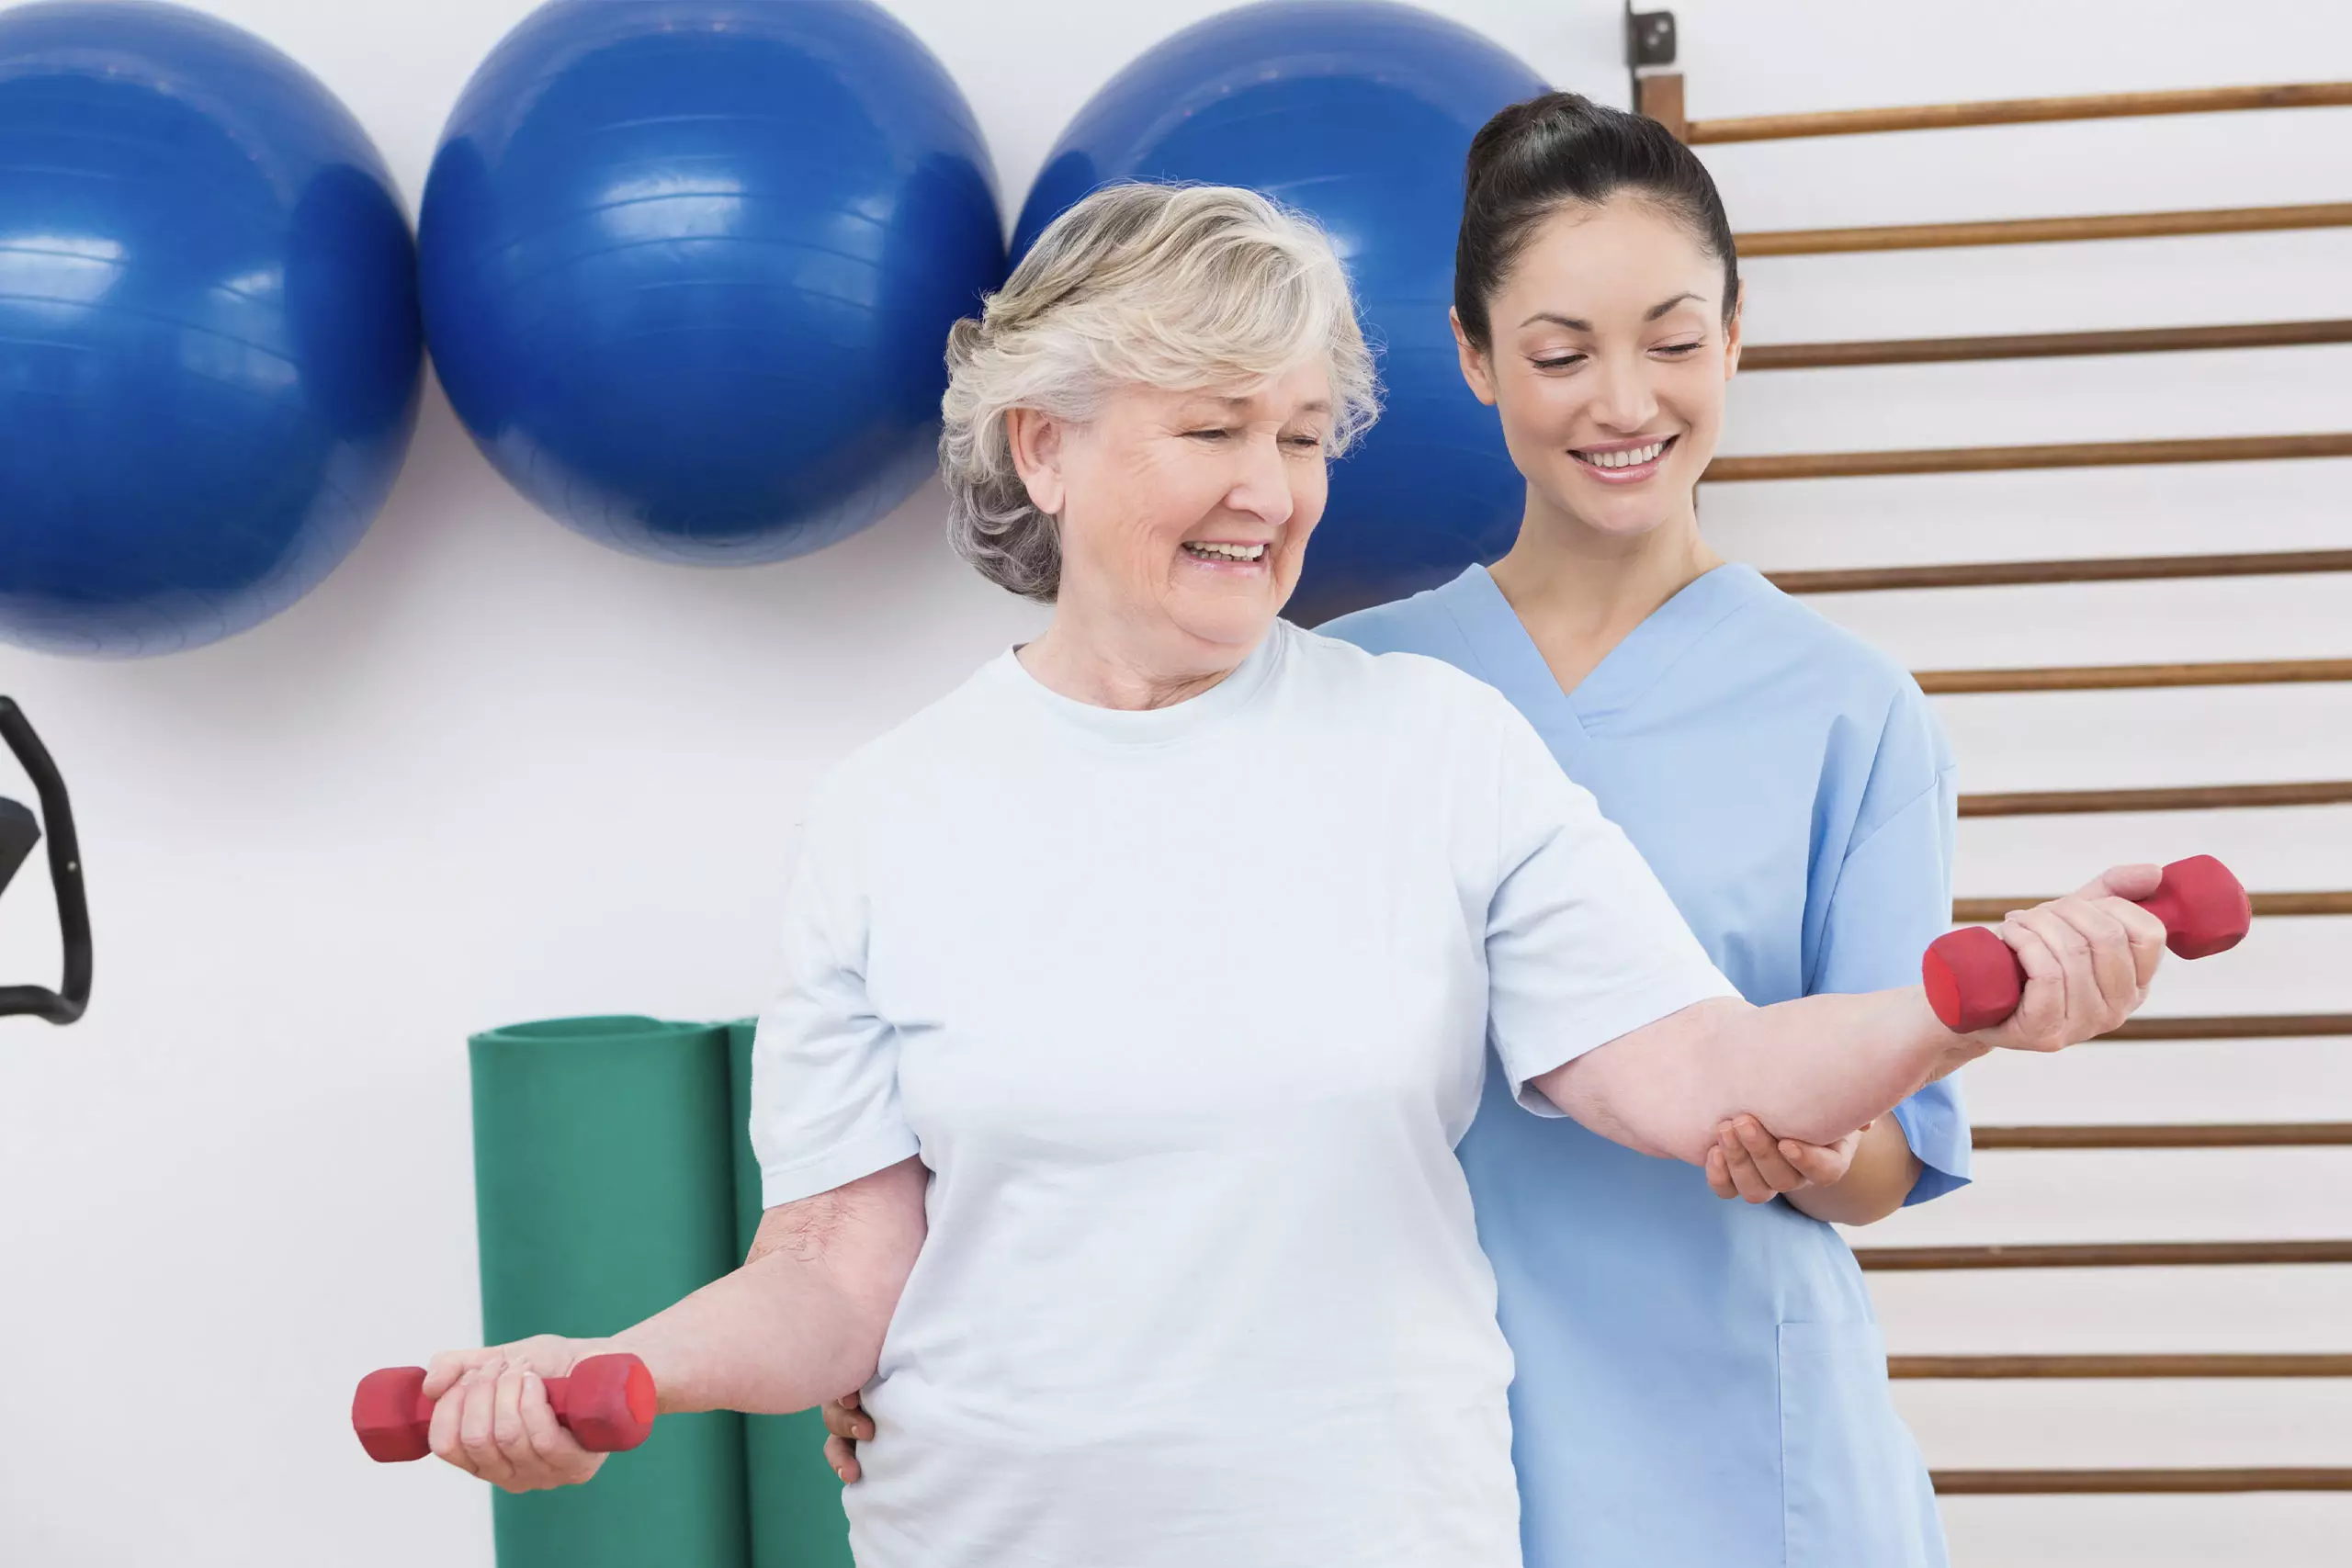 Terapia ocupacional na reabilitação física: o que é e como funciona?